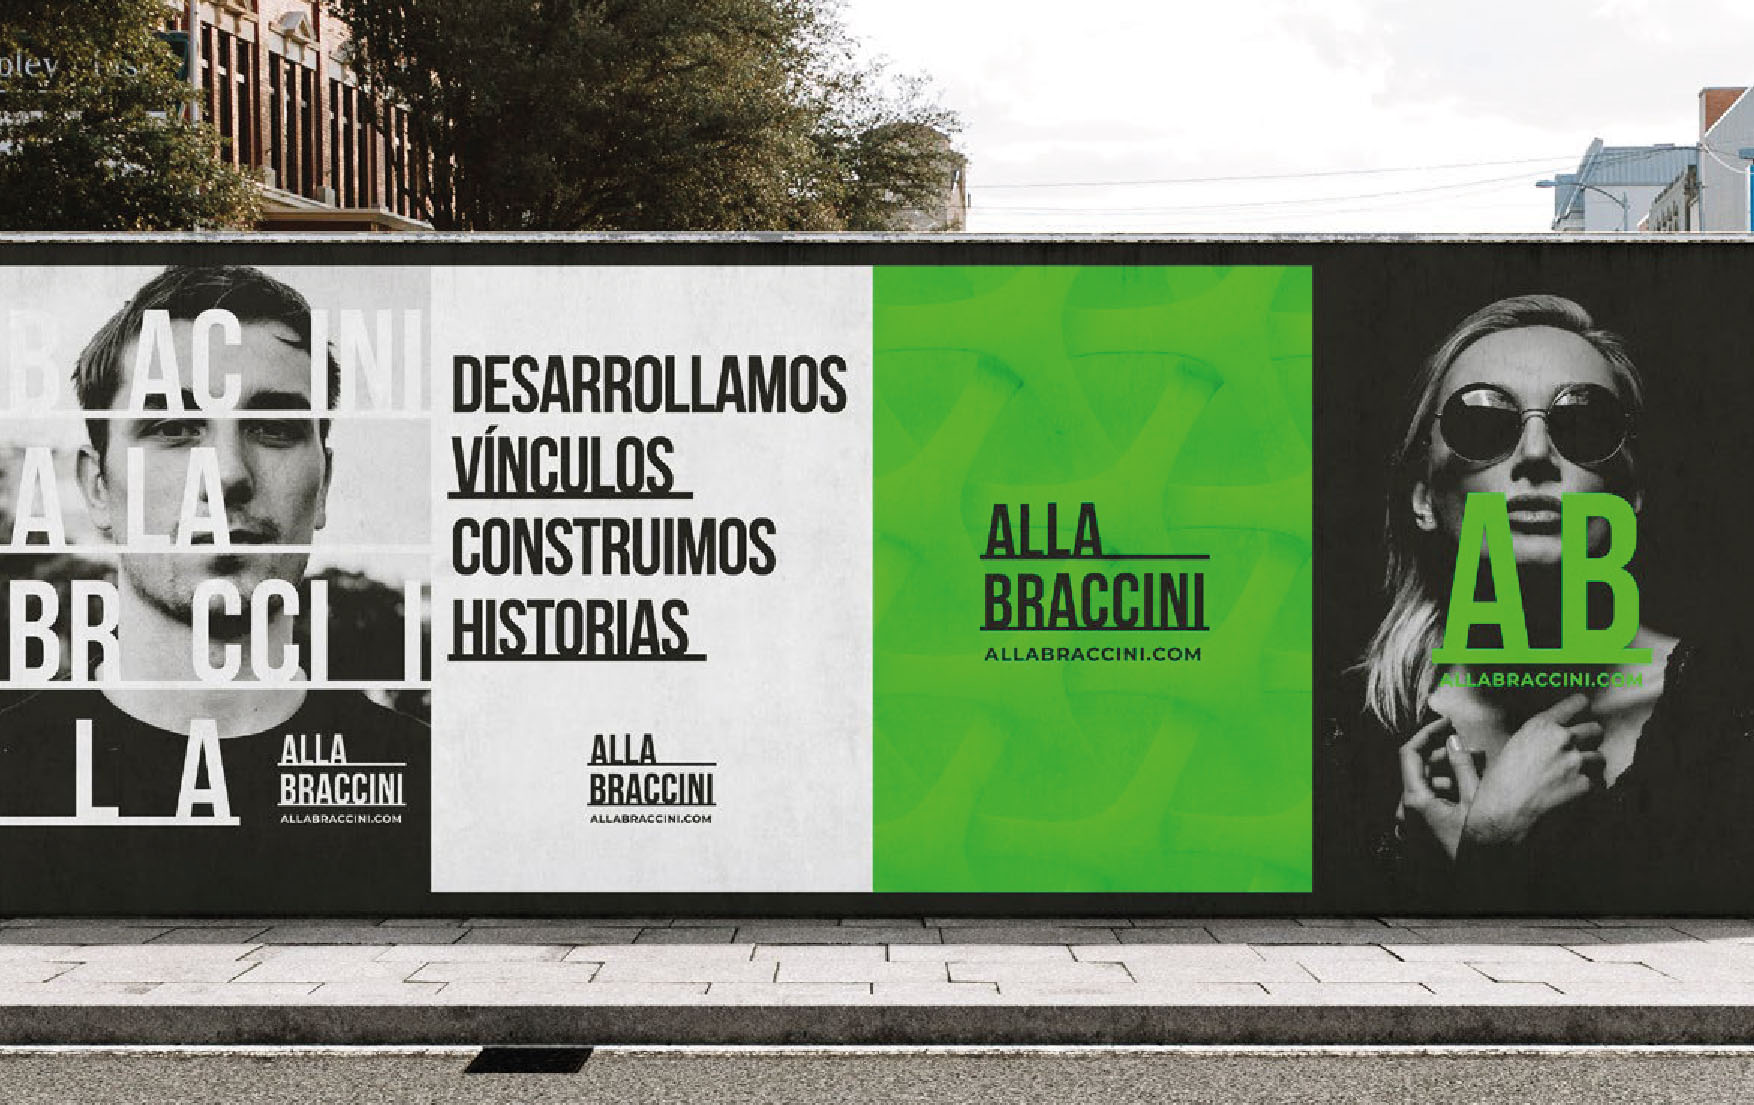 Provocative Brand Identity for Construction Company Alla Braccini